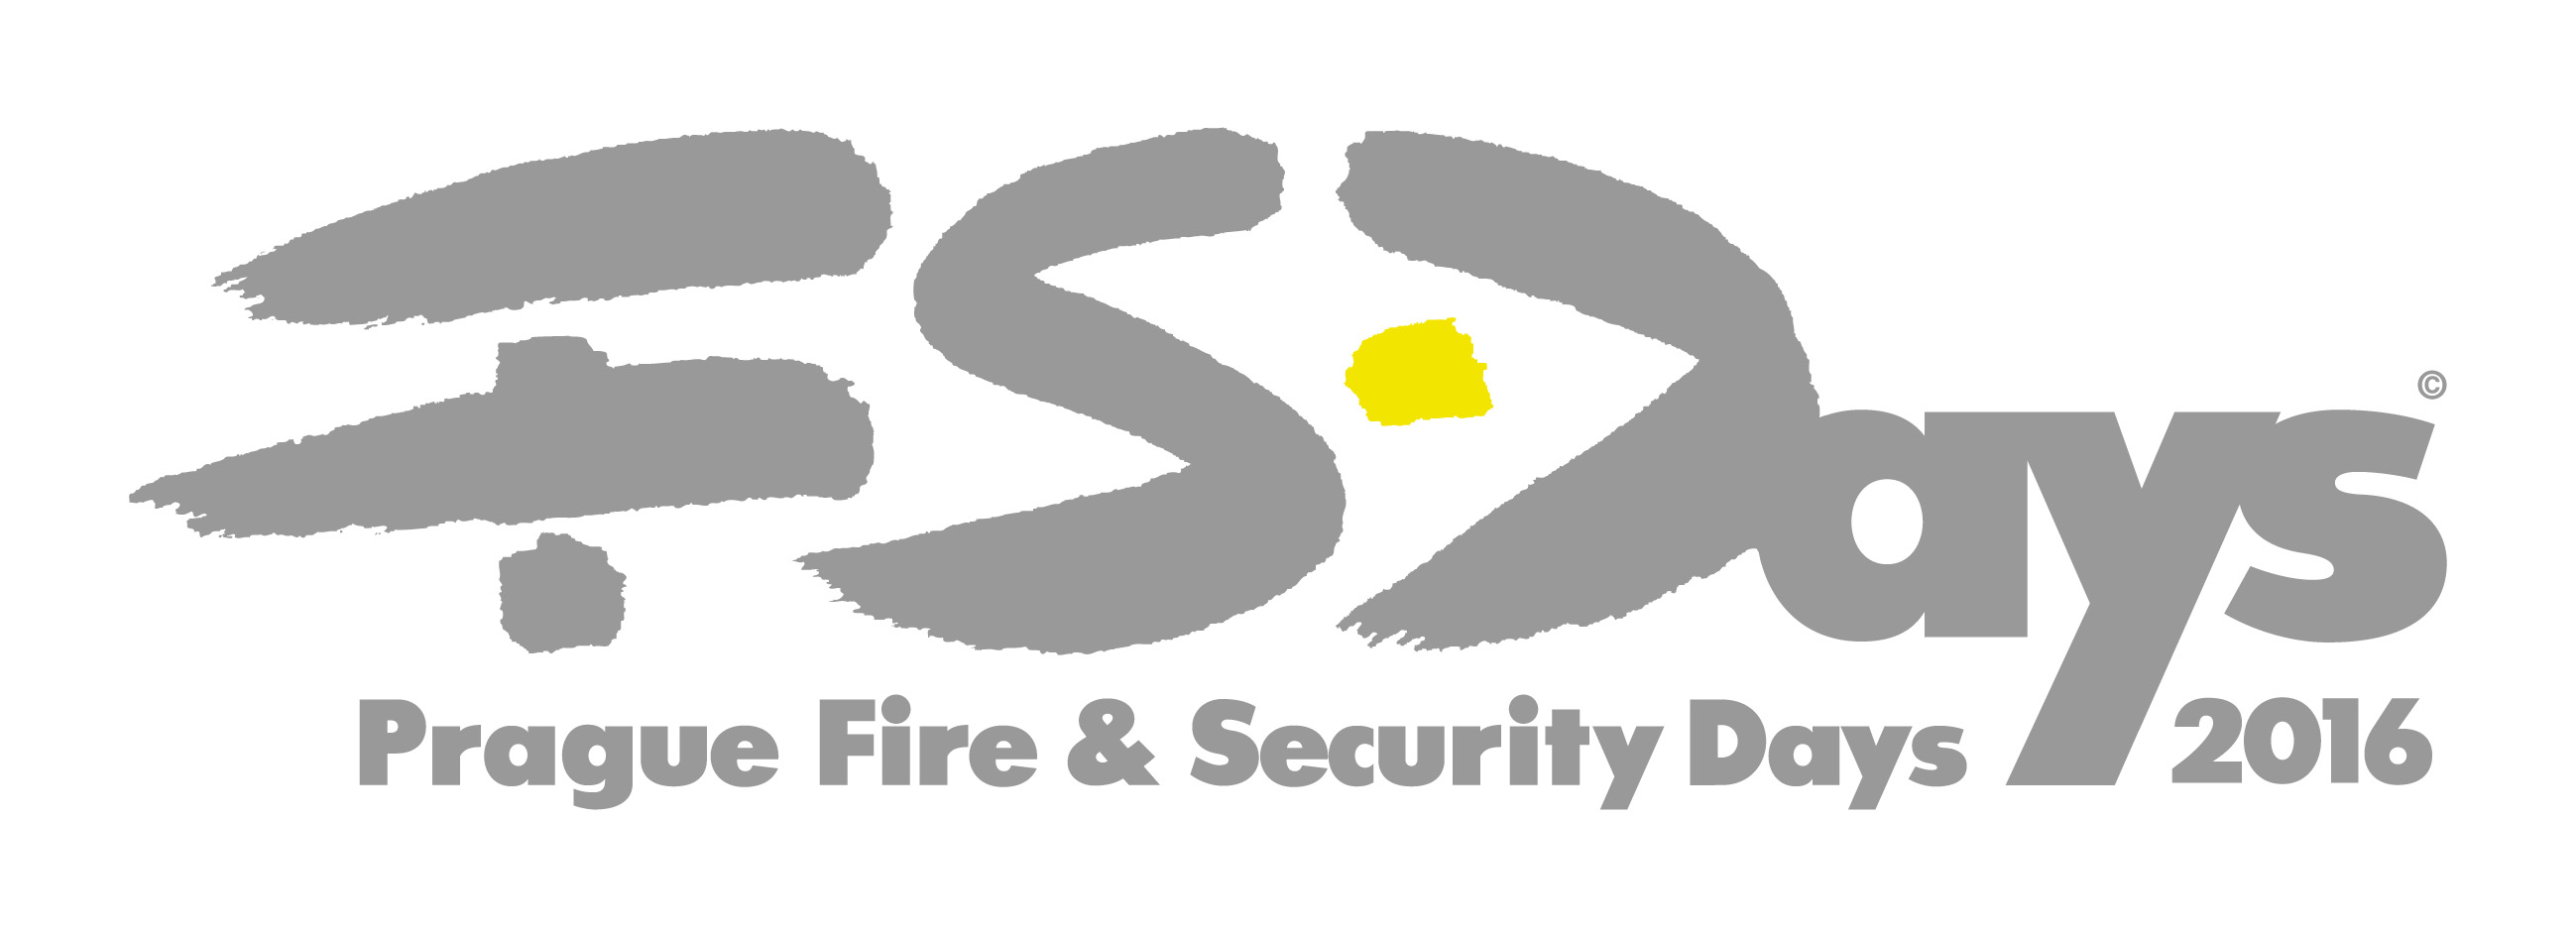 FSDays 2016 logo ba CMYK 300dpi